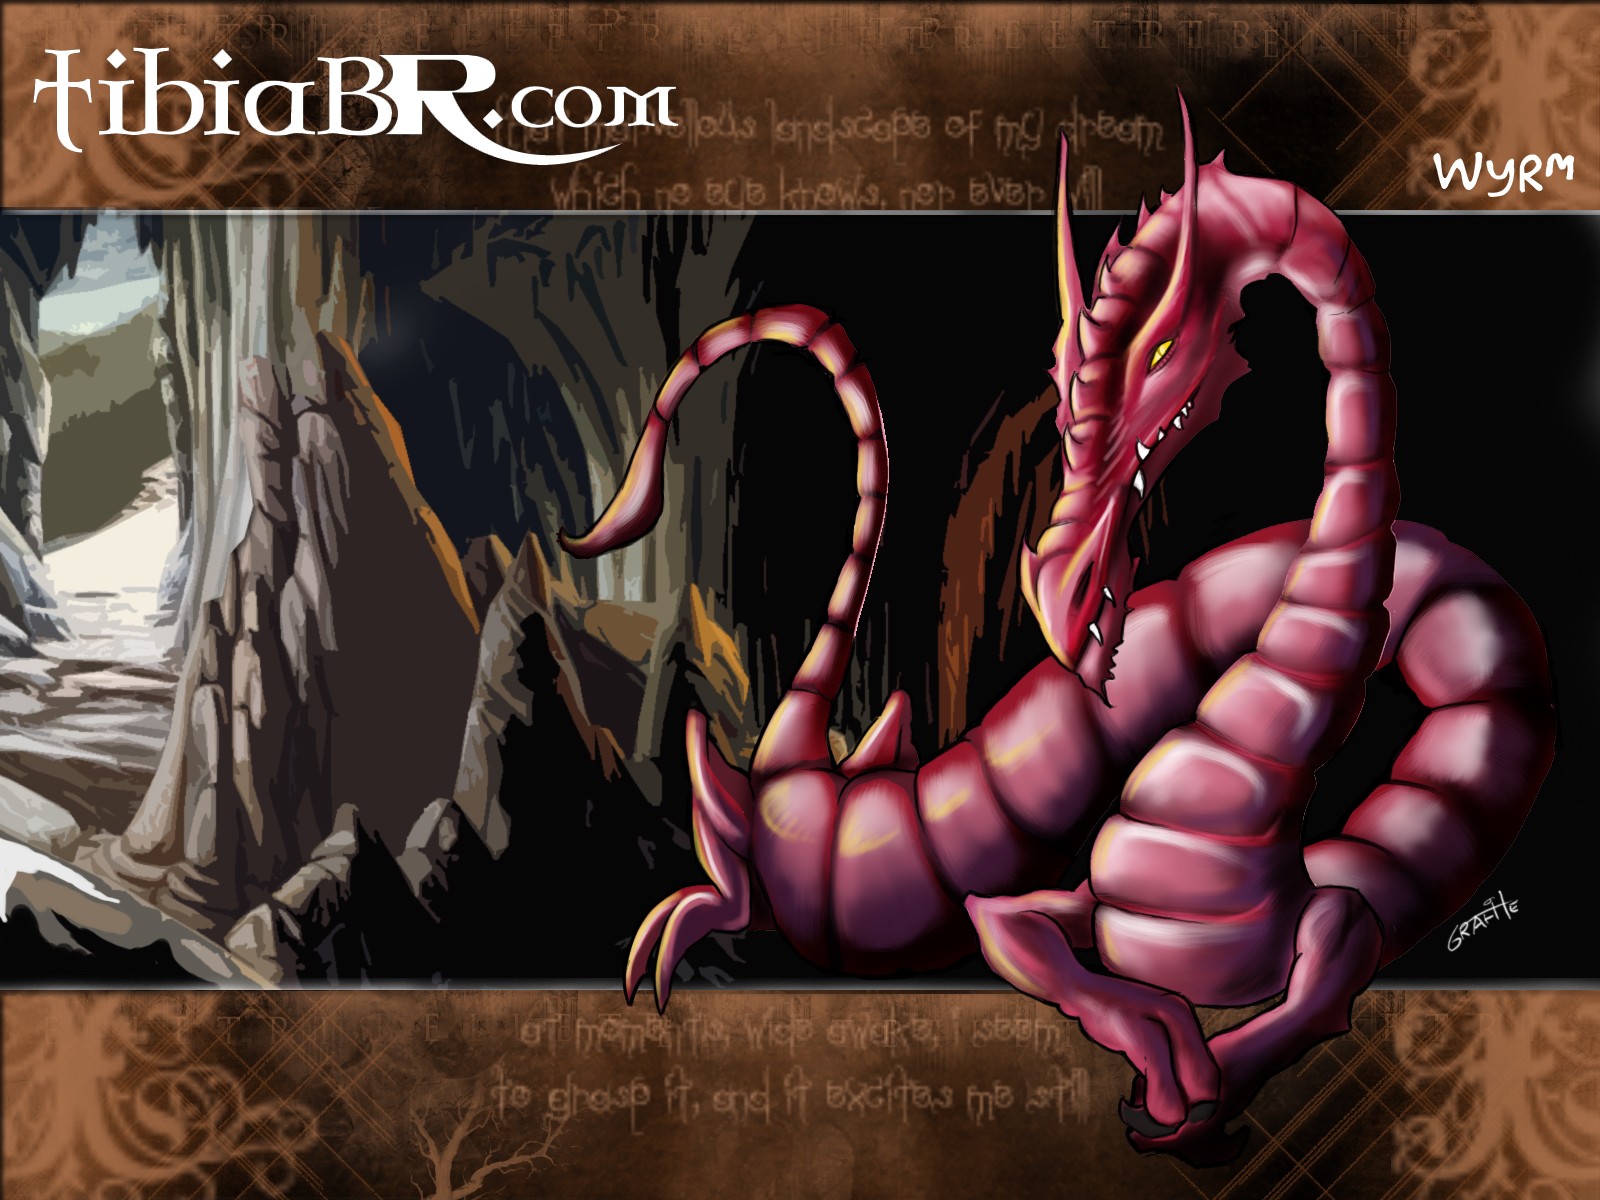 Tibia, PC gaming, RPG, Dragon Wallpaper